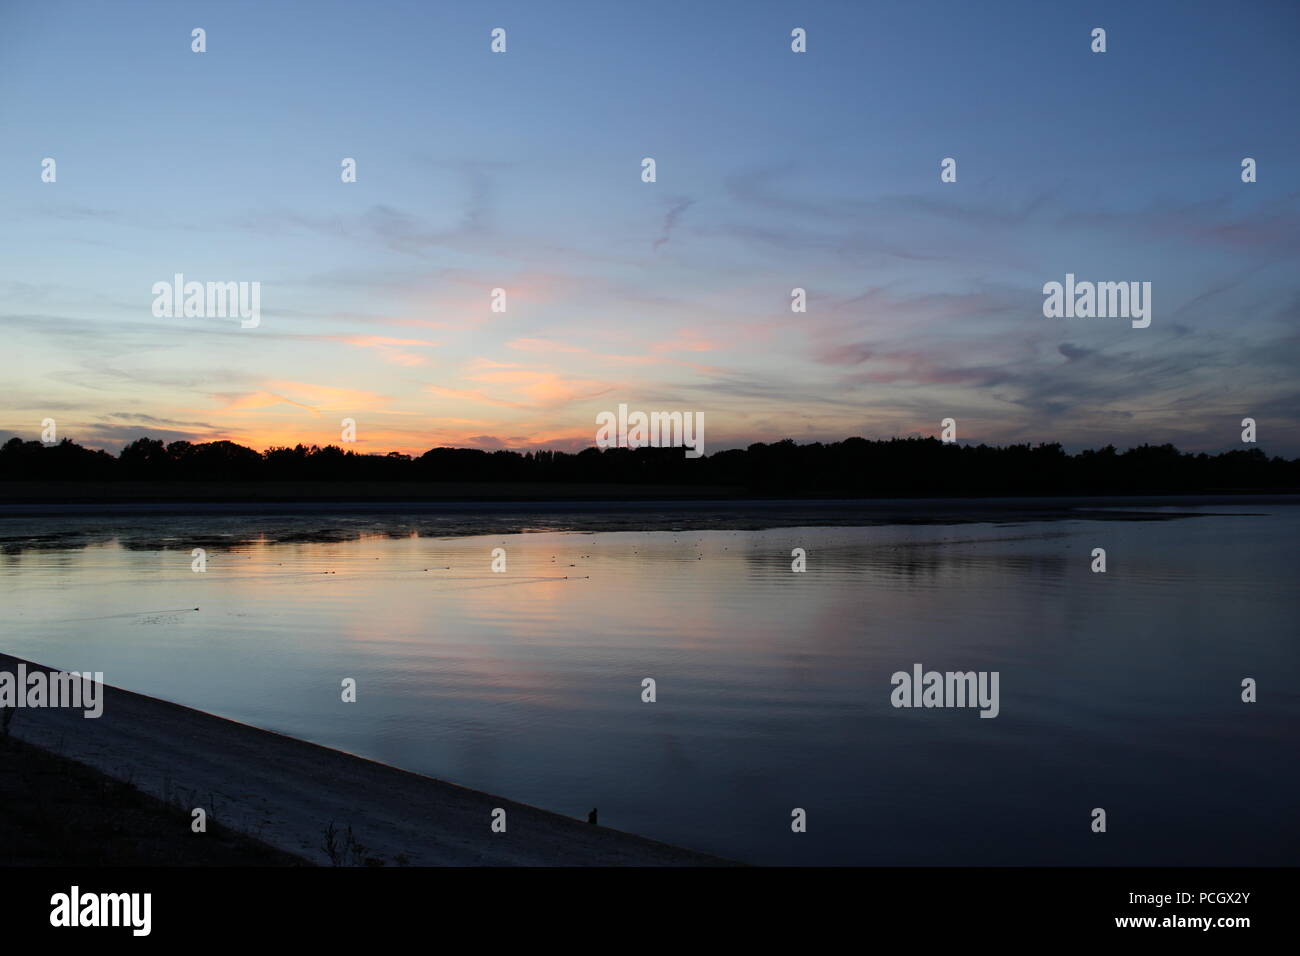 Sunset over ducks swimming on depleted reservoir Stock Photo